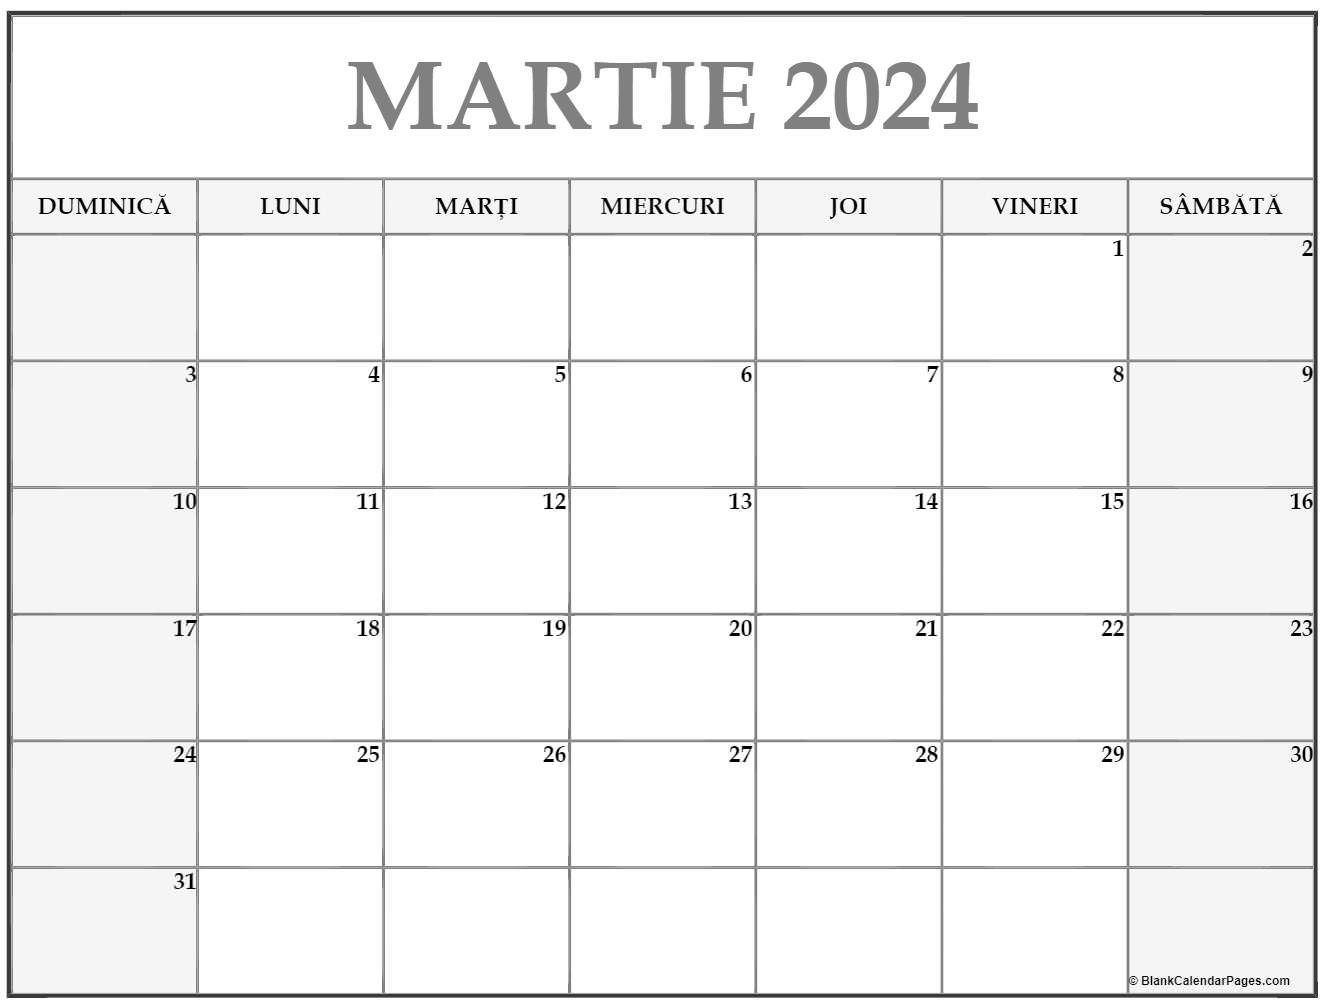 Calendarul martie 2024 imprimabil gratuit in romana